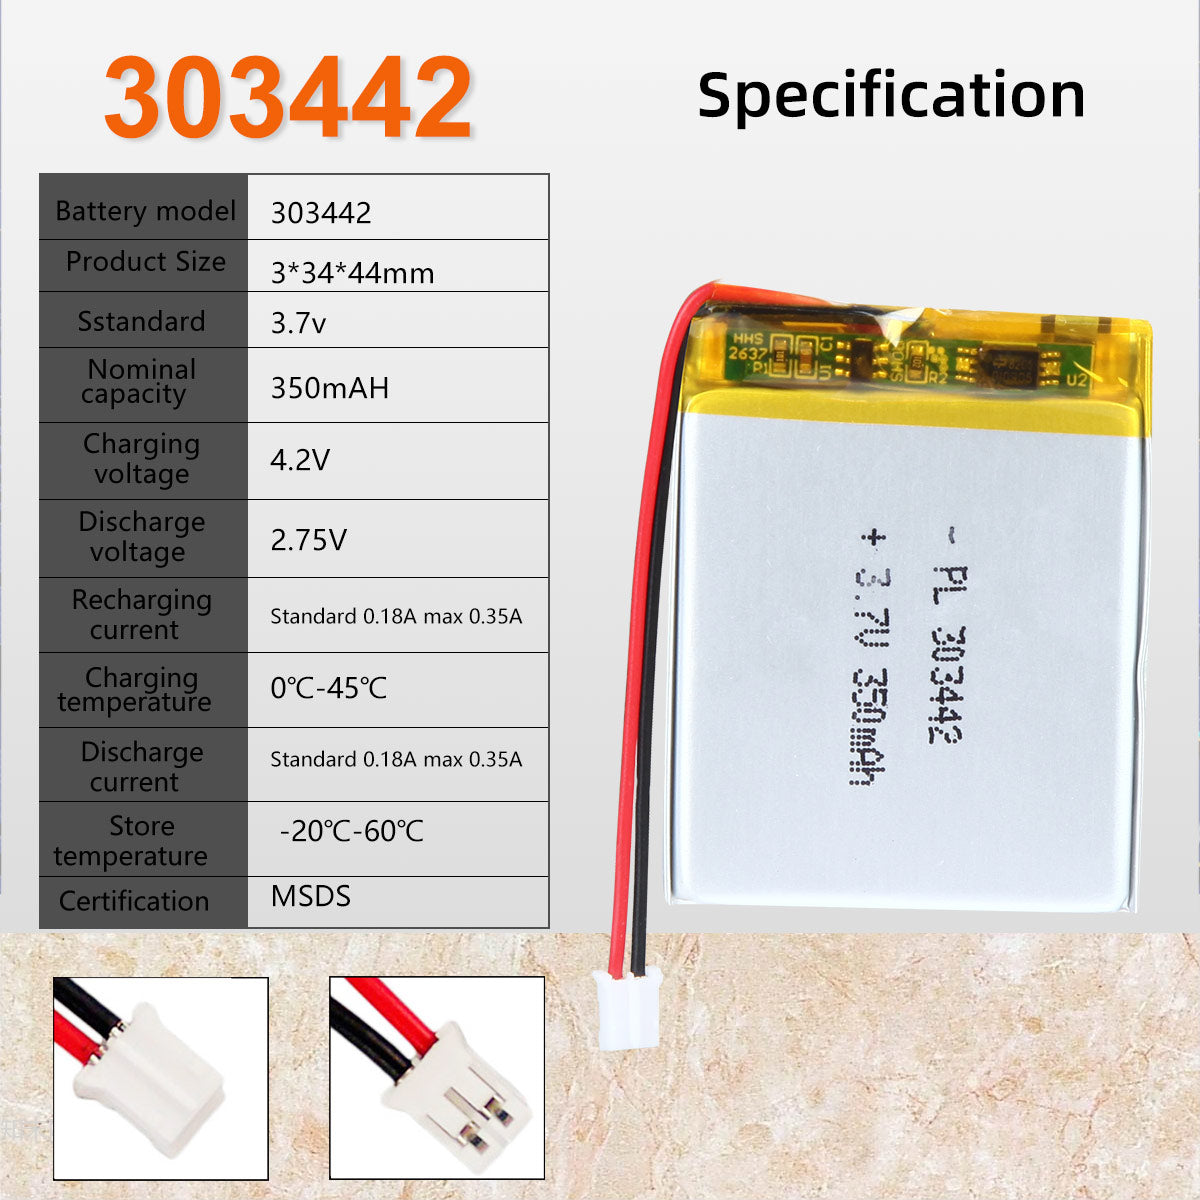 3.7V 350mAh 303442 Batterie lithium-polymère rechargeable Longueur 44mm